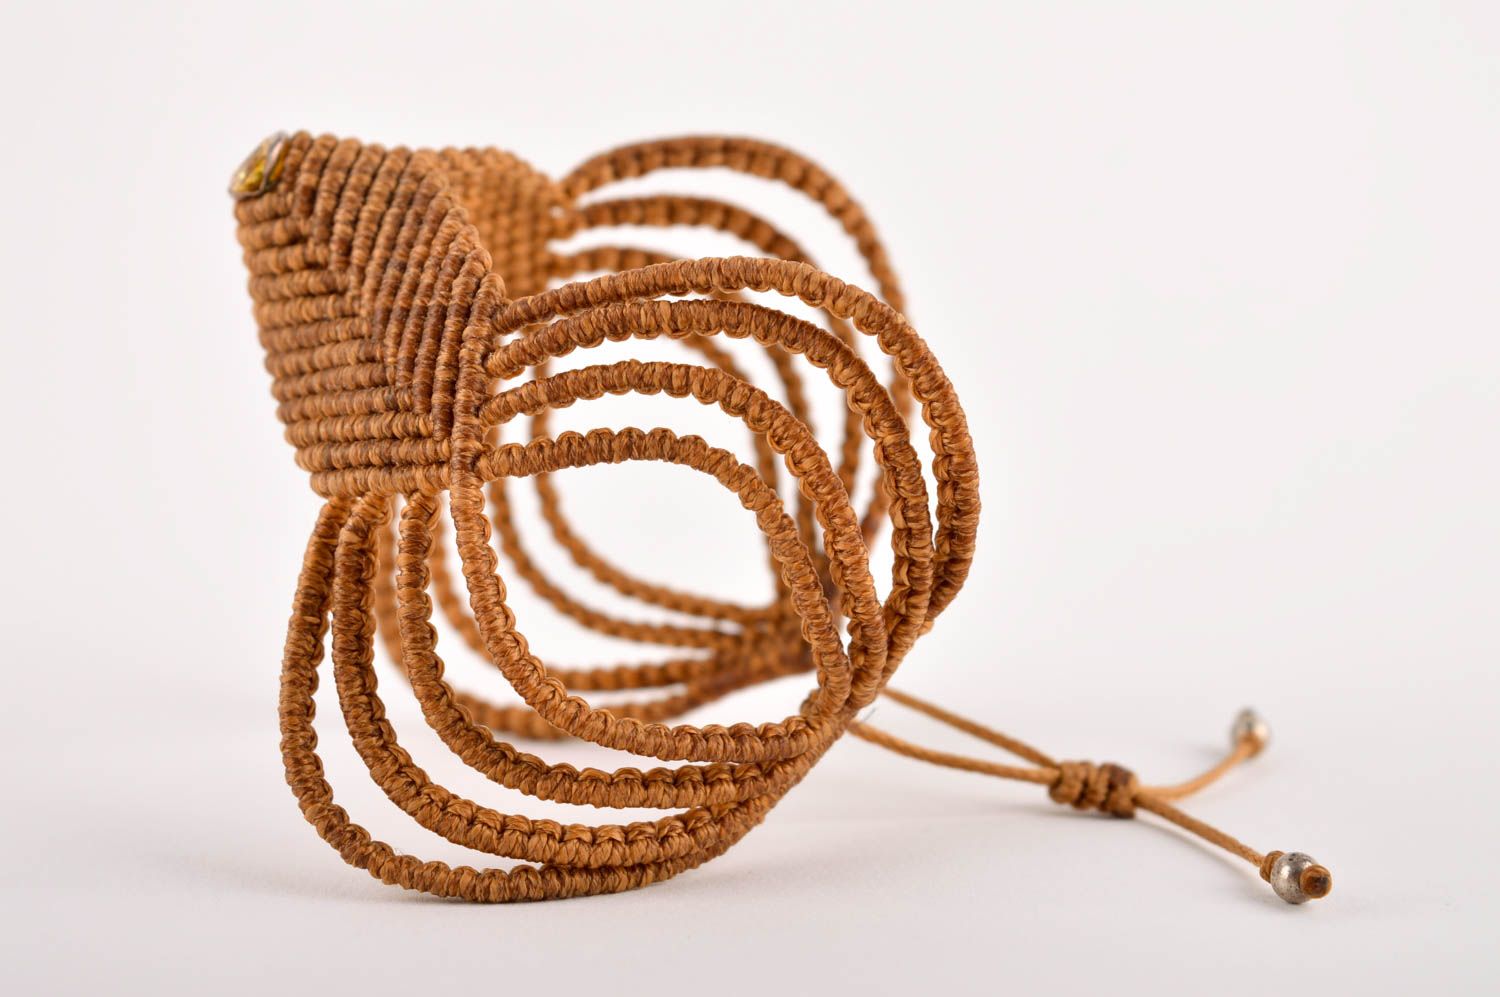 Unusual handmade woven bracelet textile bracelet designs fashion accessories photo 4